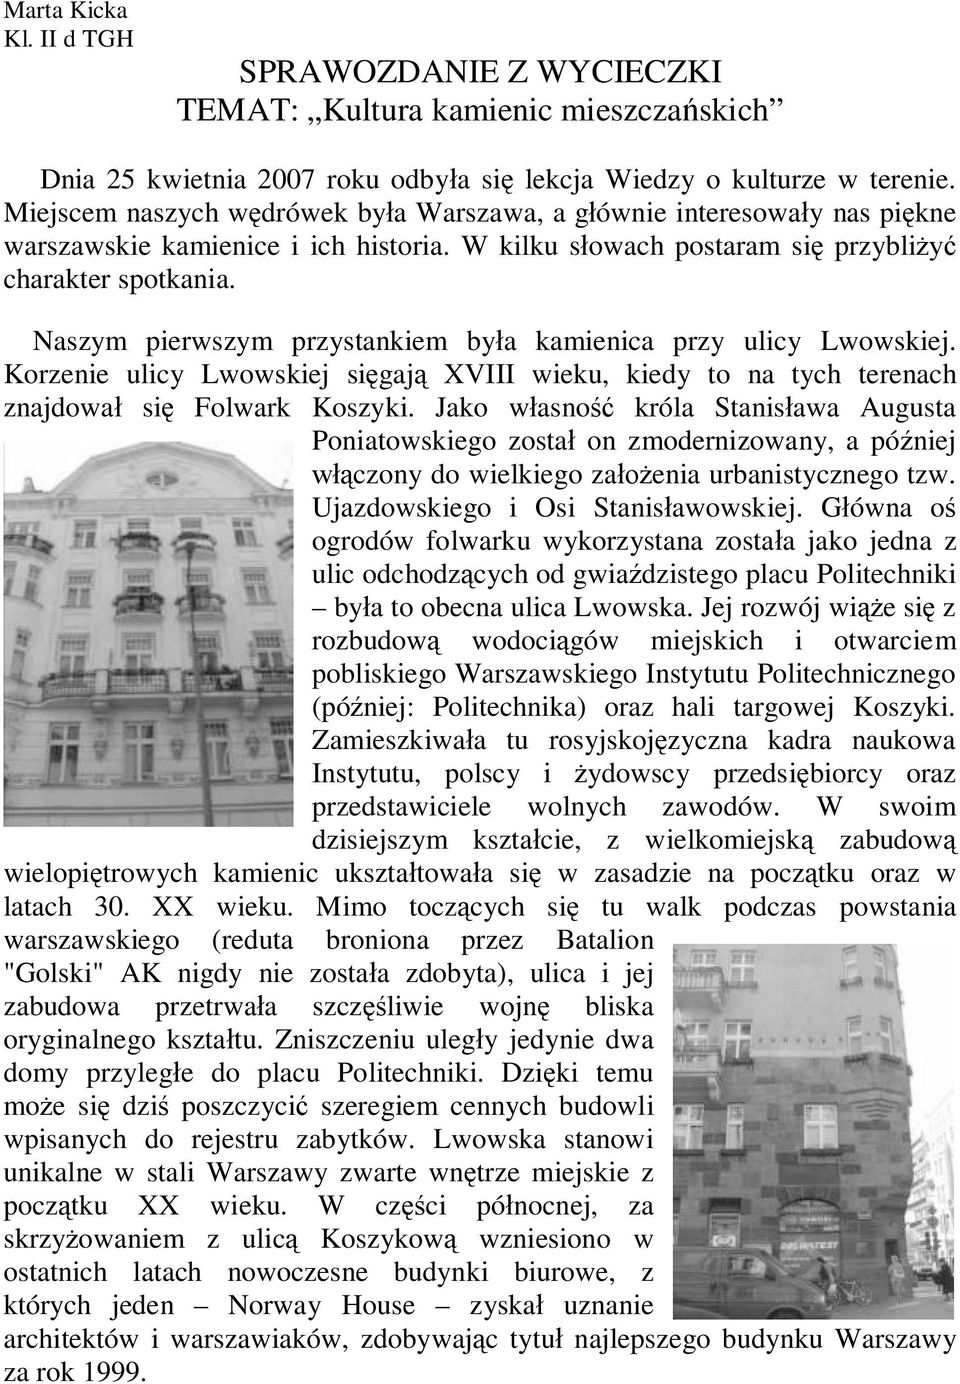 Naszym pierwszym przystankiem była kamienica przy ulicy Lwowskiej. Korzenie ulicy Lwowskiej sięgają XVIII wieku, kiedy to na tych terenach znajdował się Folwark Koszyki.